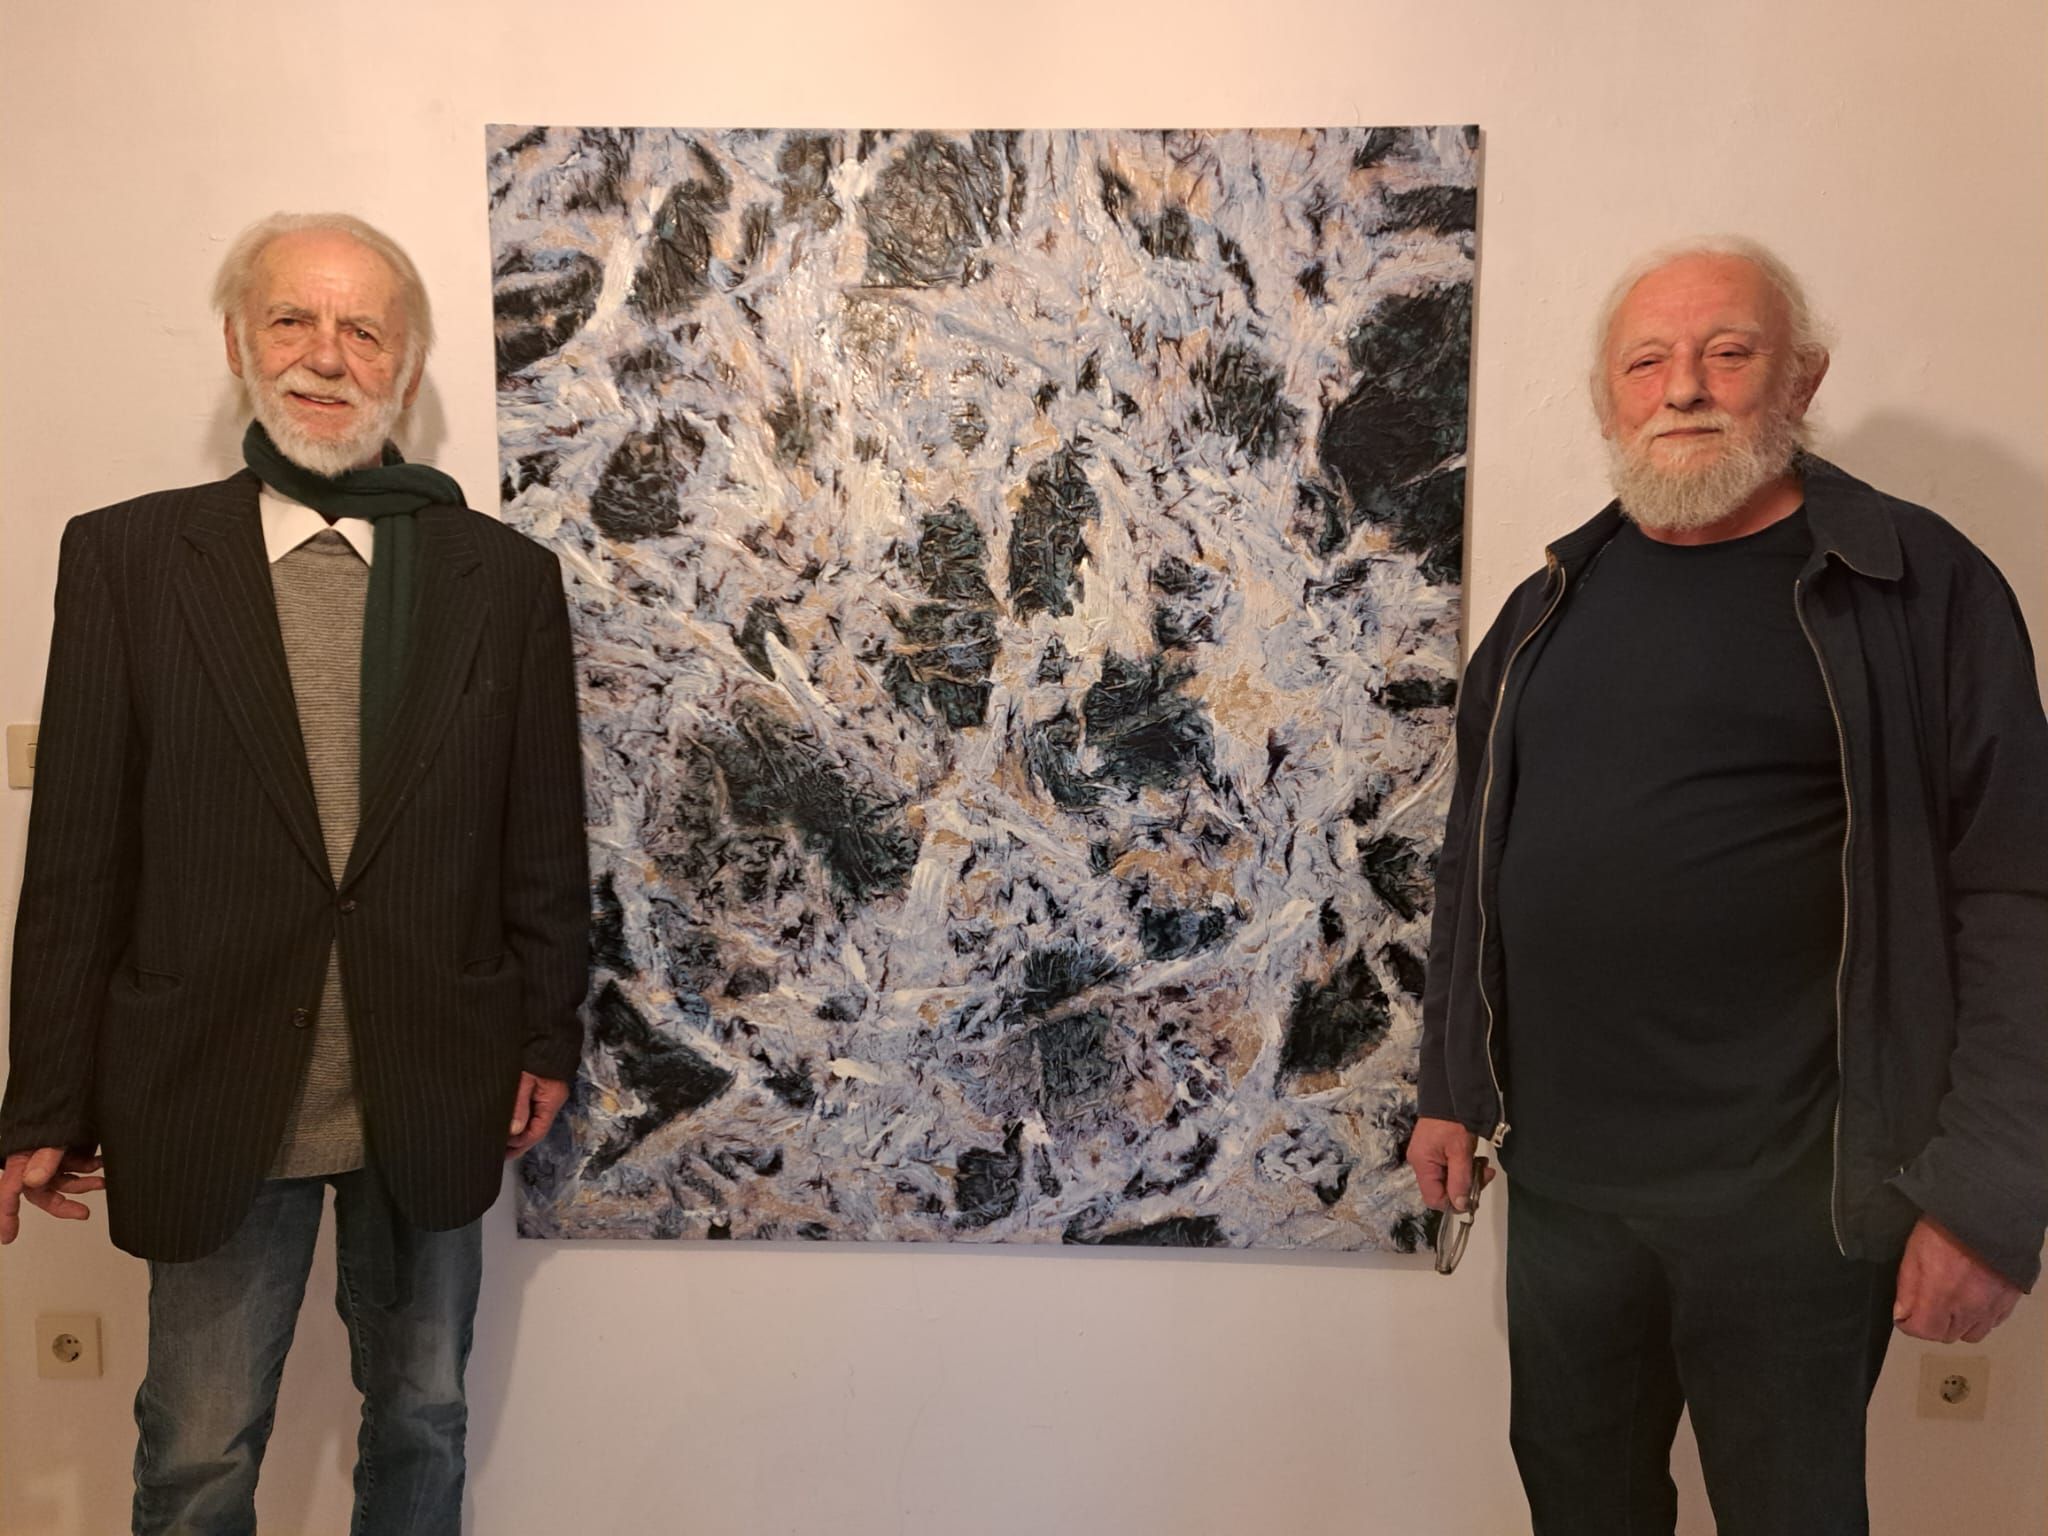 Alfons Roeckl links und Rudolf Wolfbeisser rechts, dazwischen ein Bild in schwarz und weiss